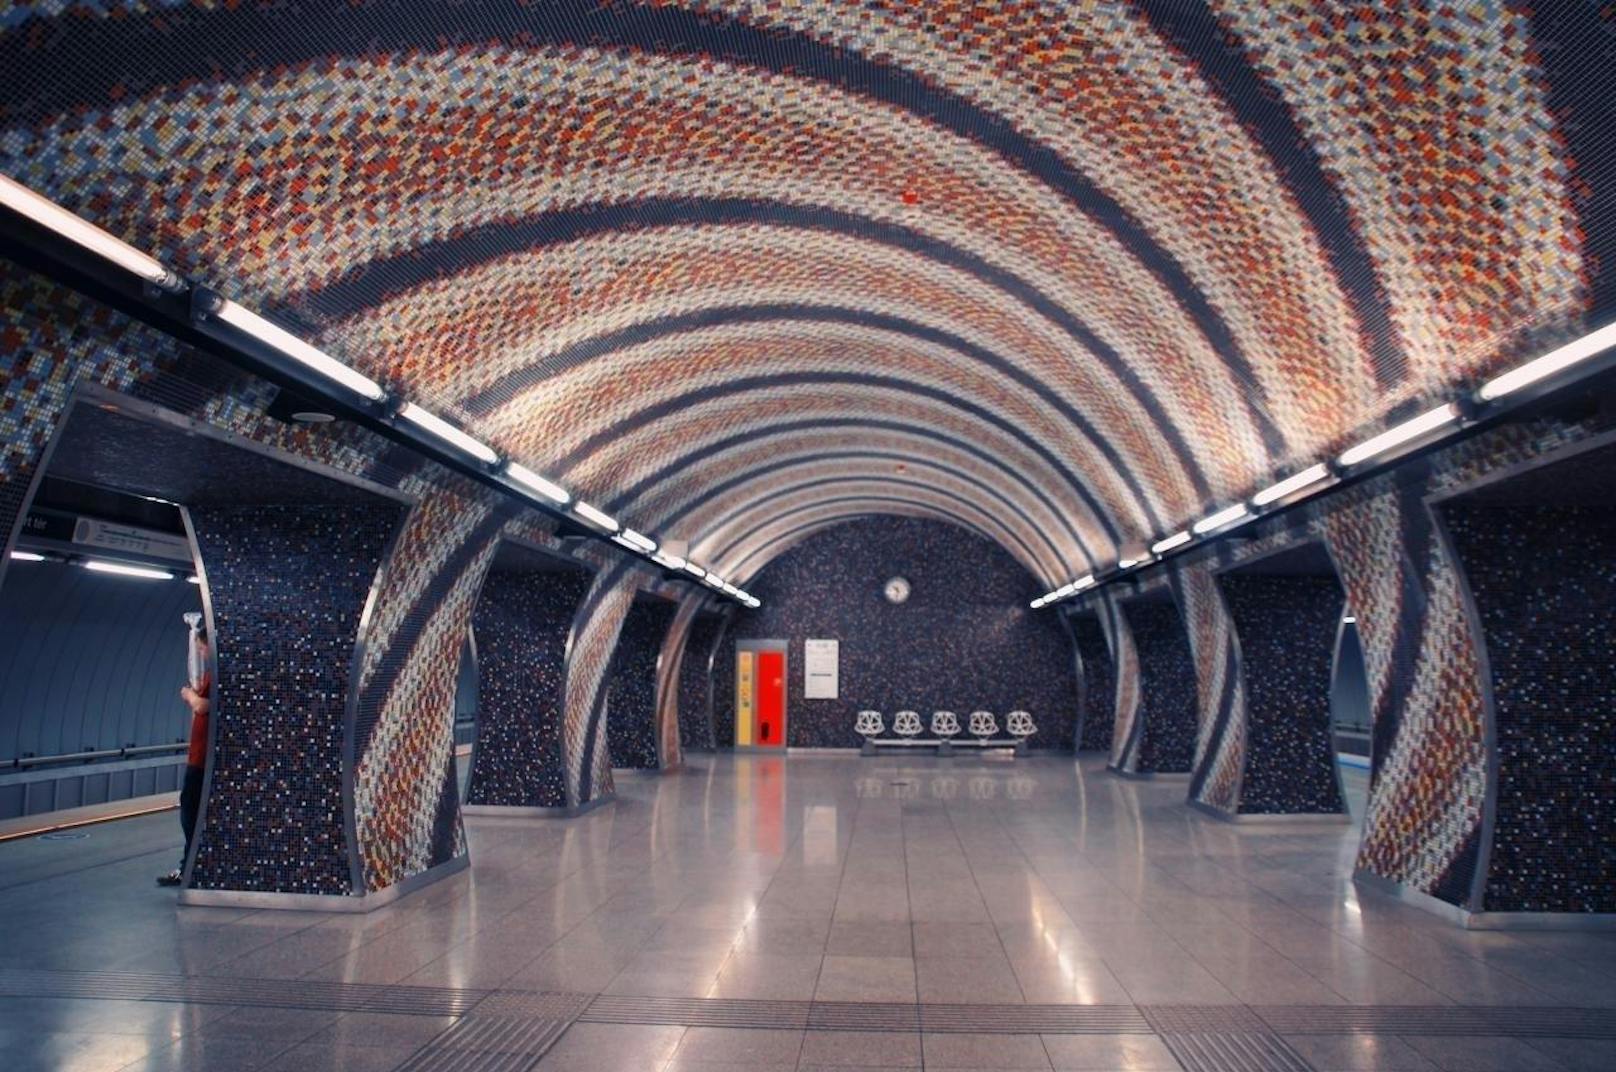 Platz 8 belegt der Szent Gellért Square in Budapest. Während sich die jüngste Metro in Dubai befindet, gibt es in Budapest eines der ältesten U-Bahn-Netze der Welt. Es besteht schon seit 1896. Diese Haltestelle gibt es aber erst seit 2014, sie wurde vom Künstler Tamás Komoróczky entworfen. Er bildete mit ca. 2,8 Millionen Mosaikplättchen dieses wellenförmige Muster.